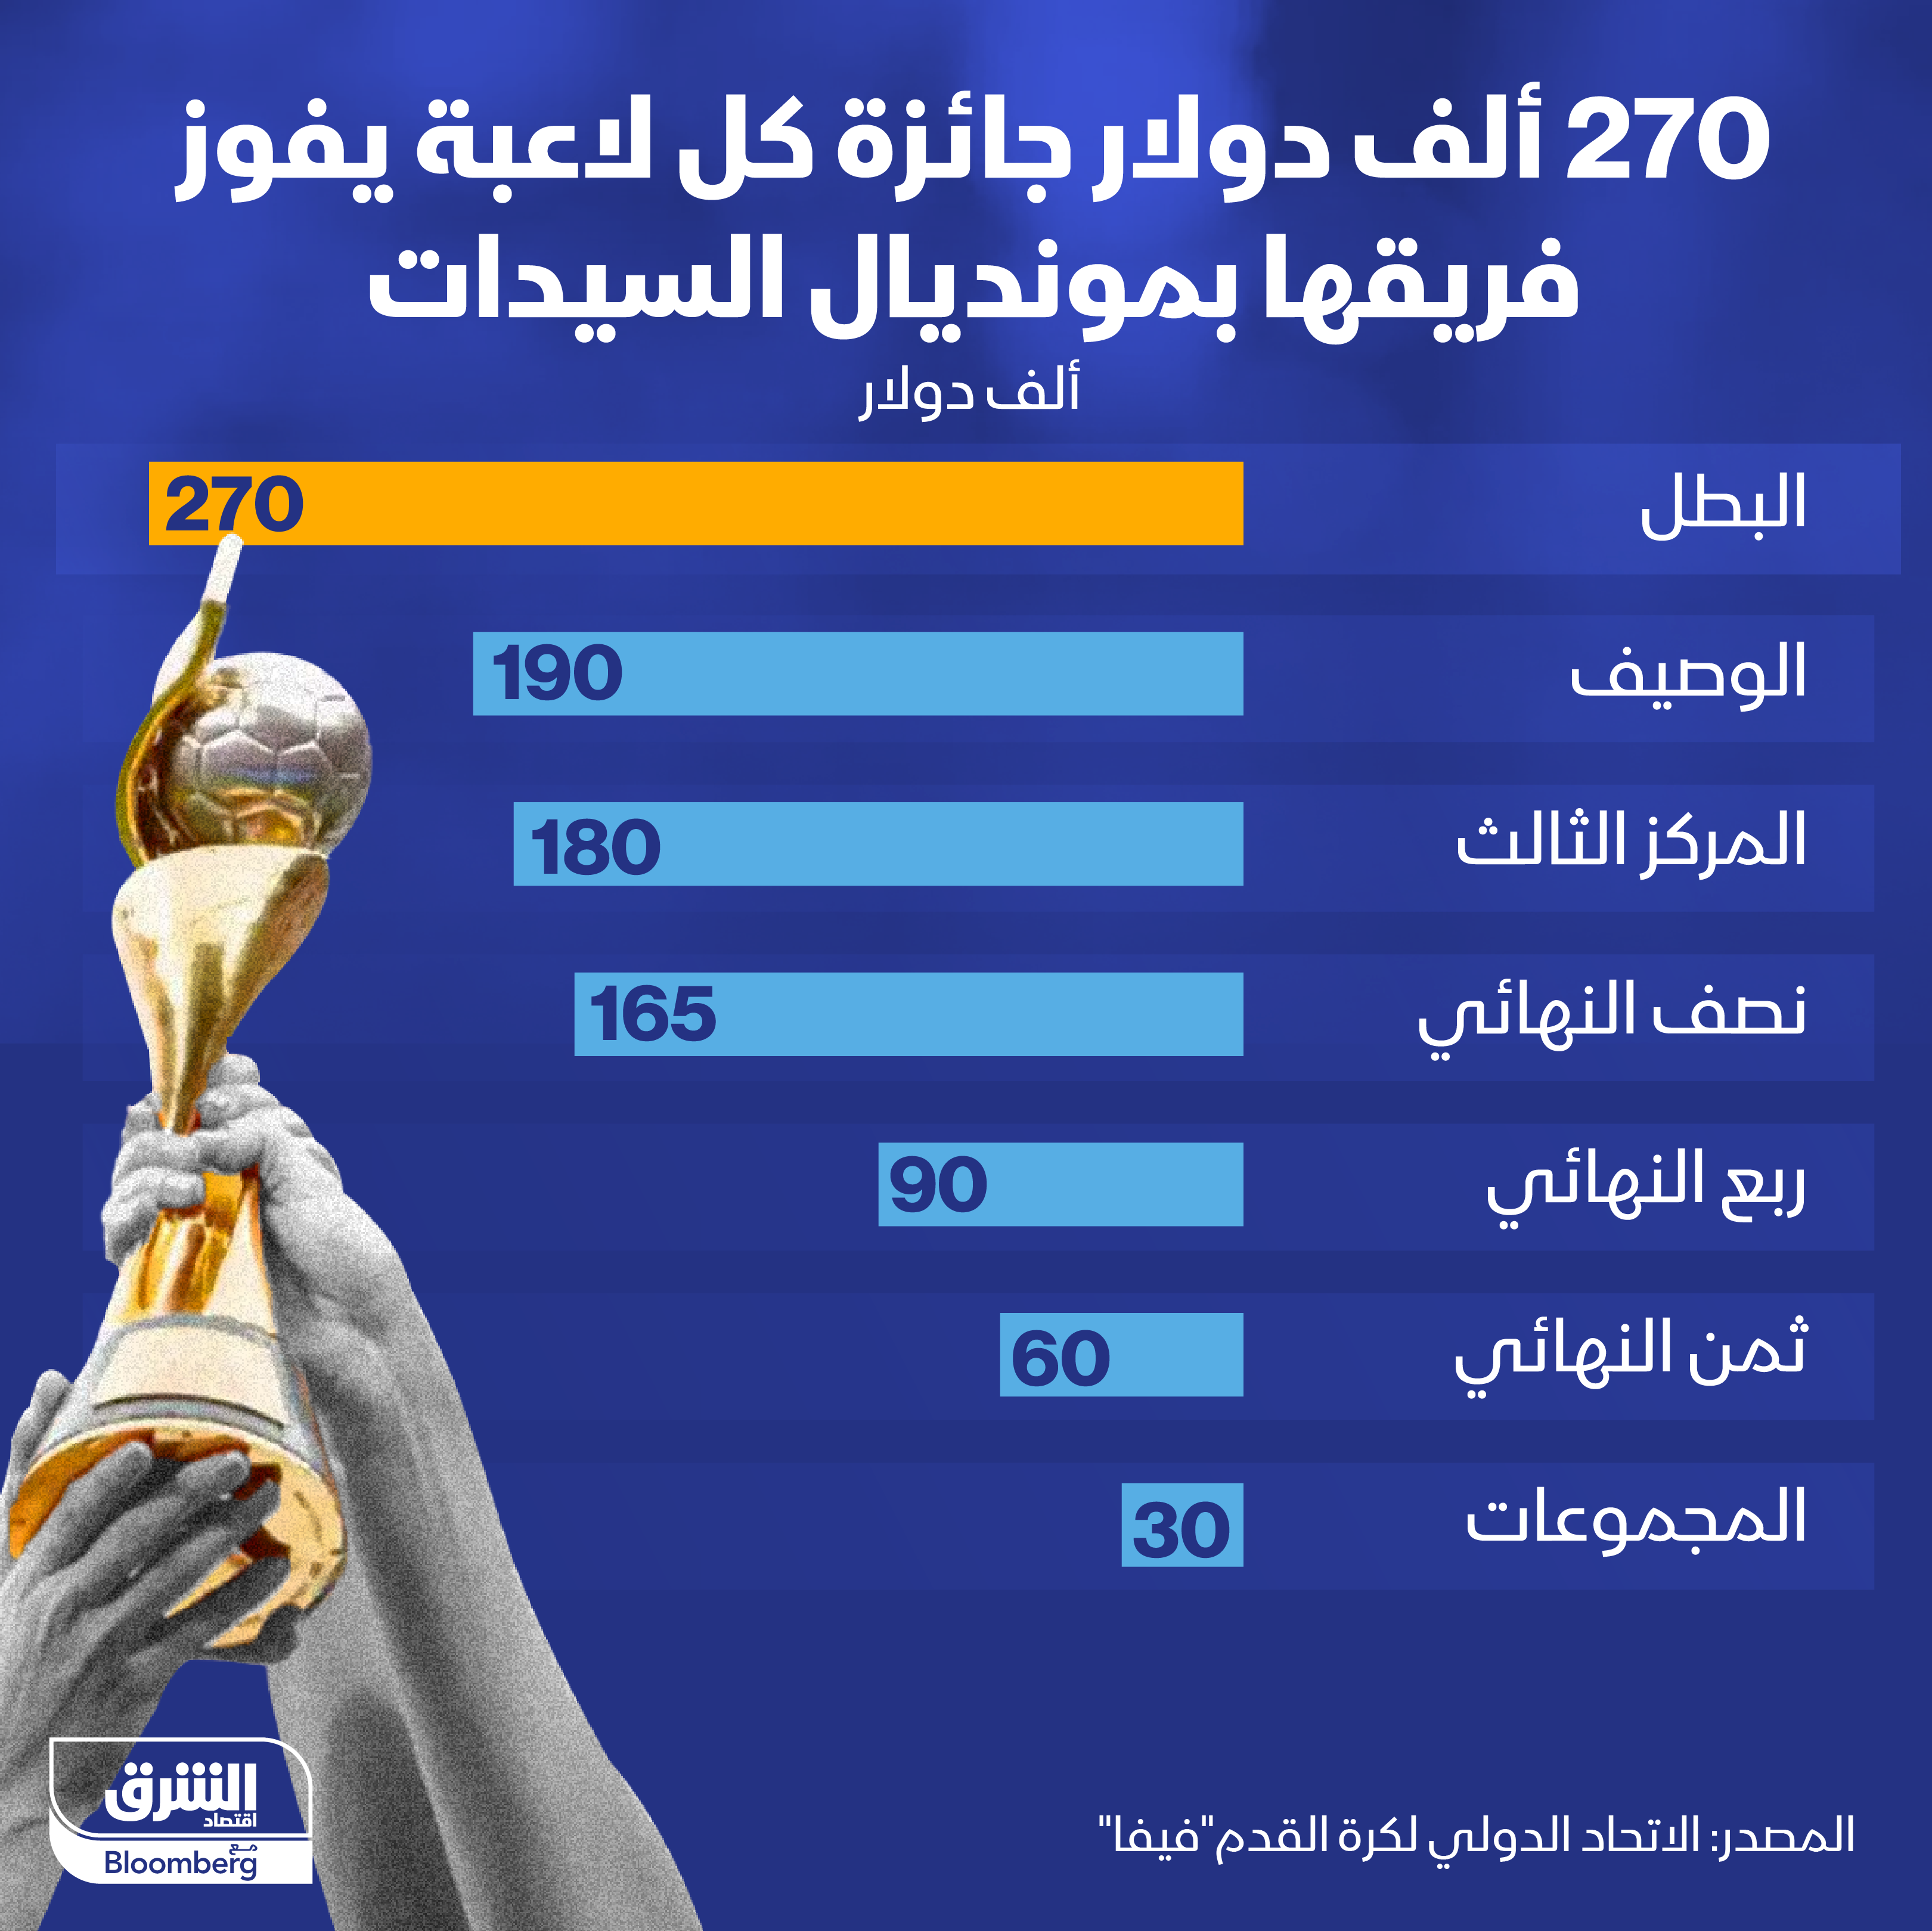 لاعبات المنتخب الفائز بكأس العالم ستنال كل واحدة منهن 270 ألف دولار